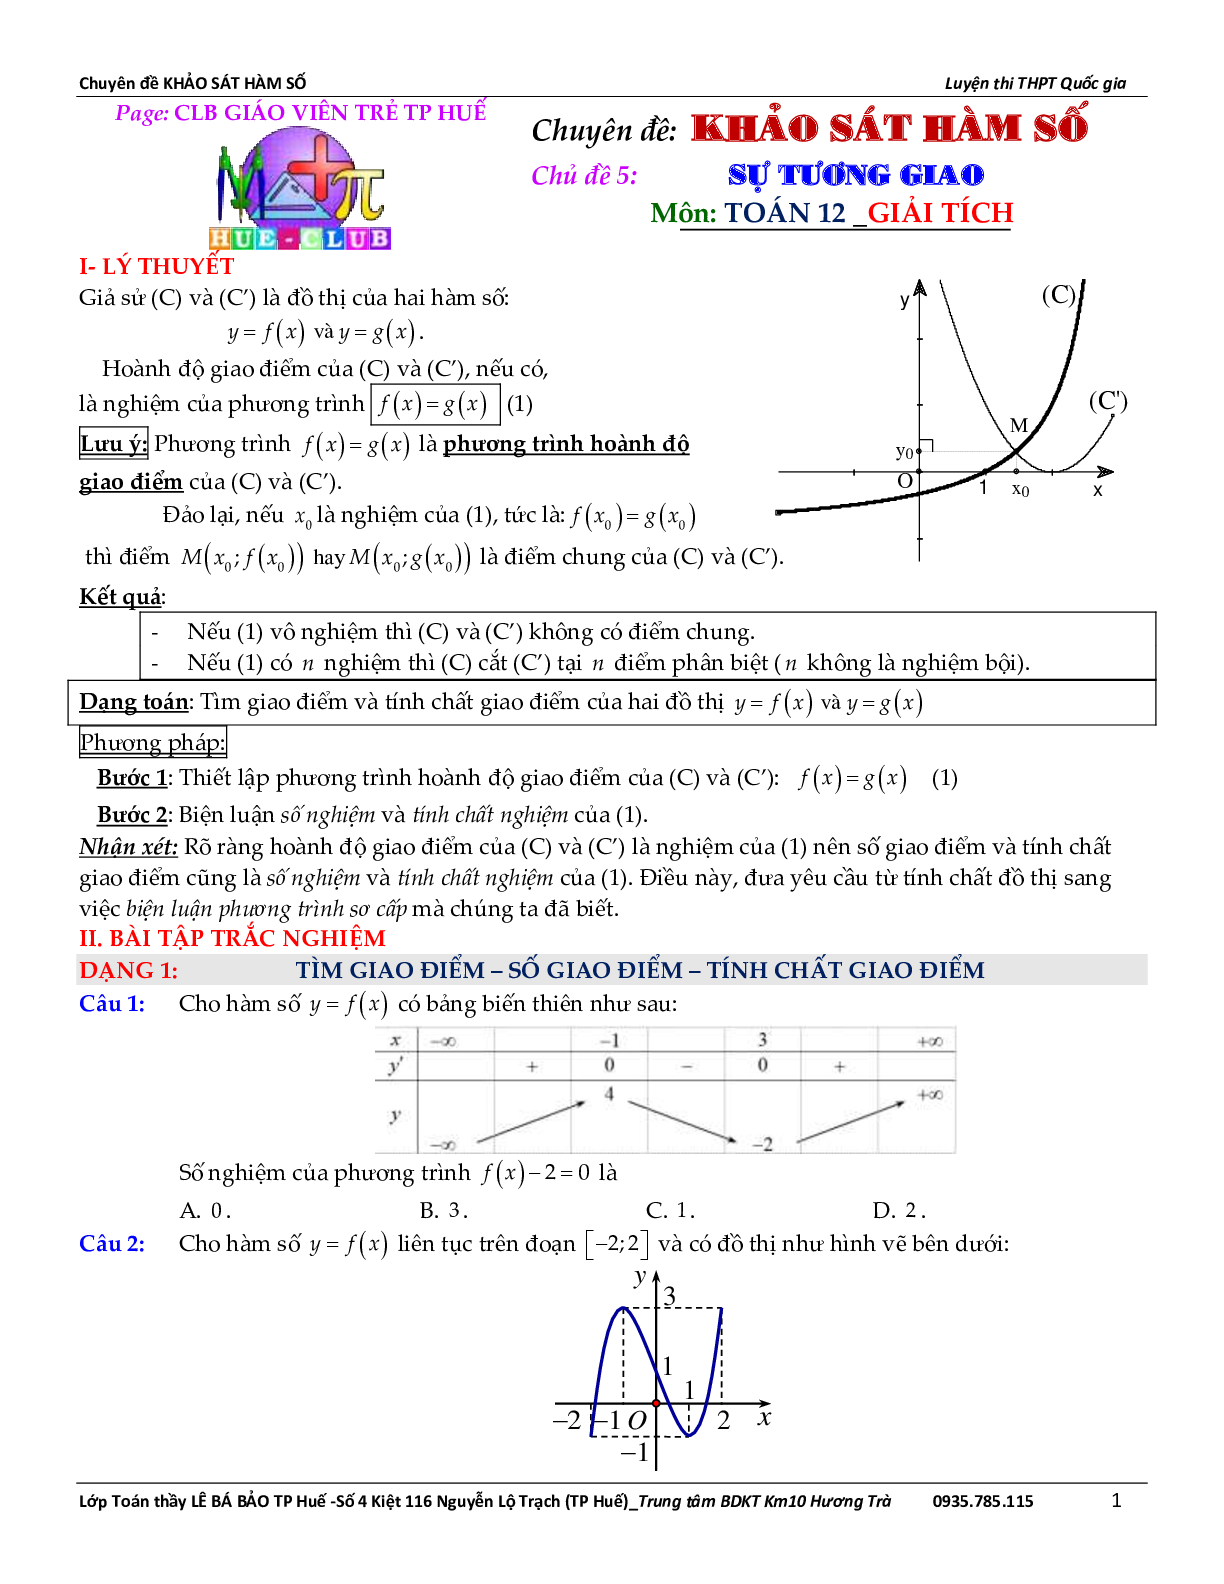 Bài toán về tương giao của đồ thị hàm số (trang 2)